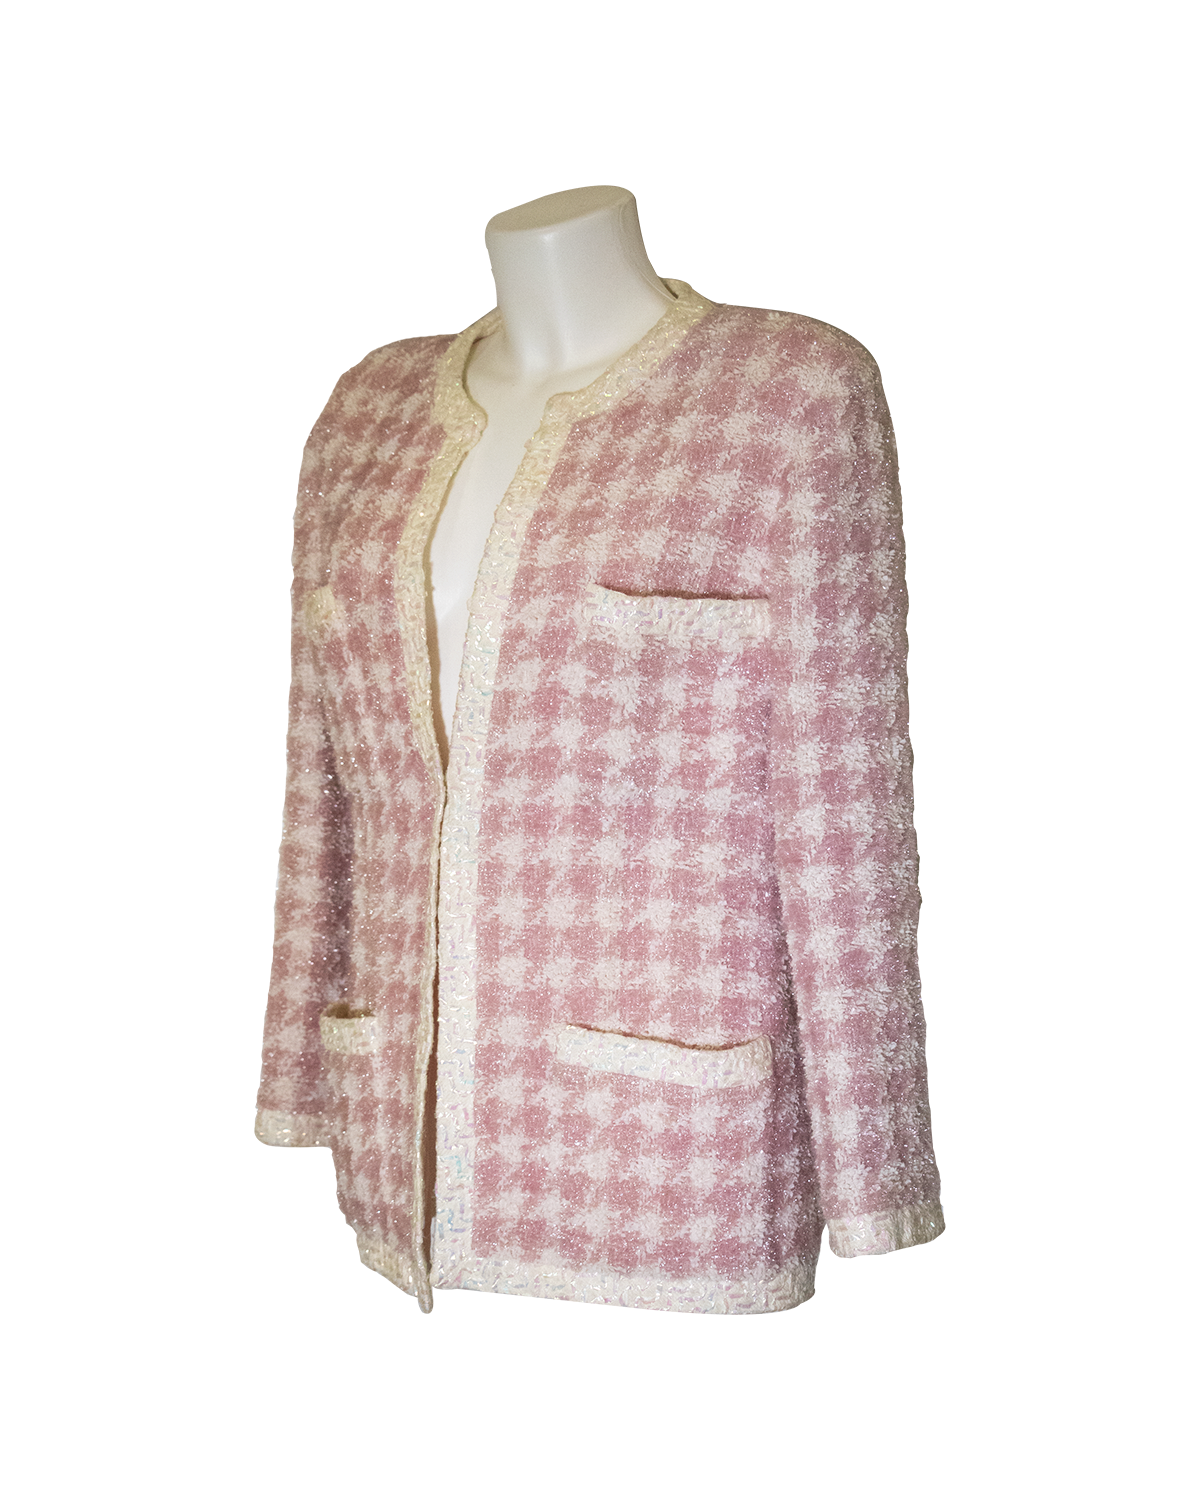 Pied de Poule Pink Jacket from 1980s Chanel | TSA